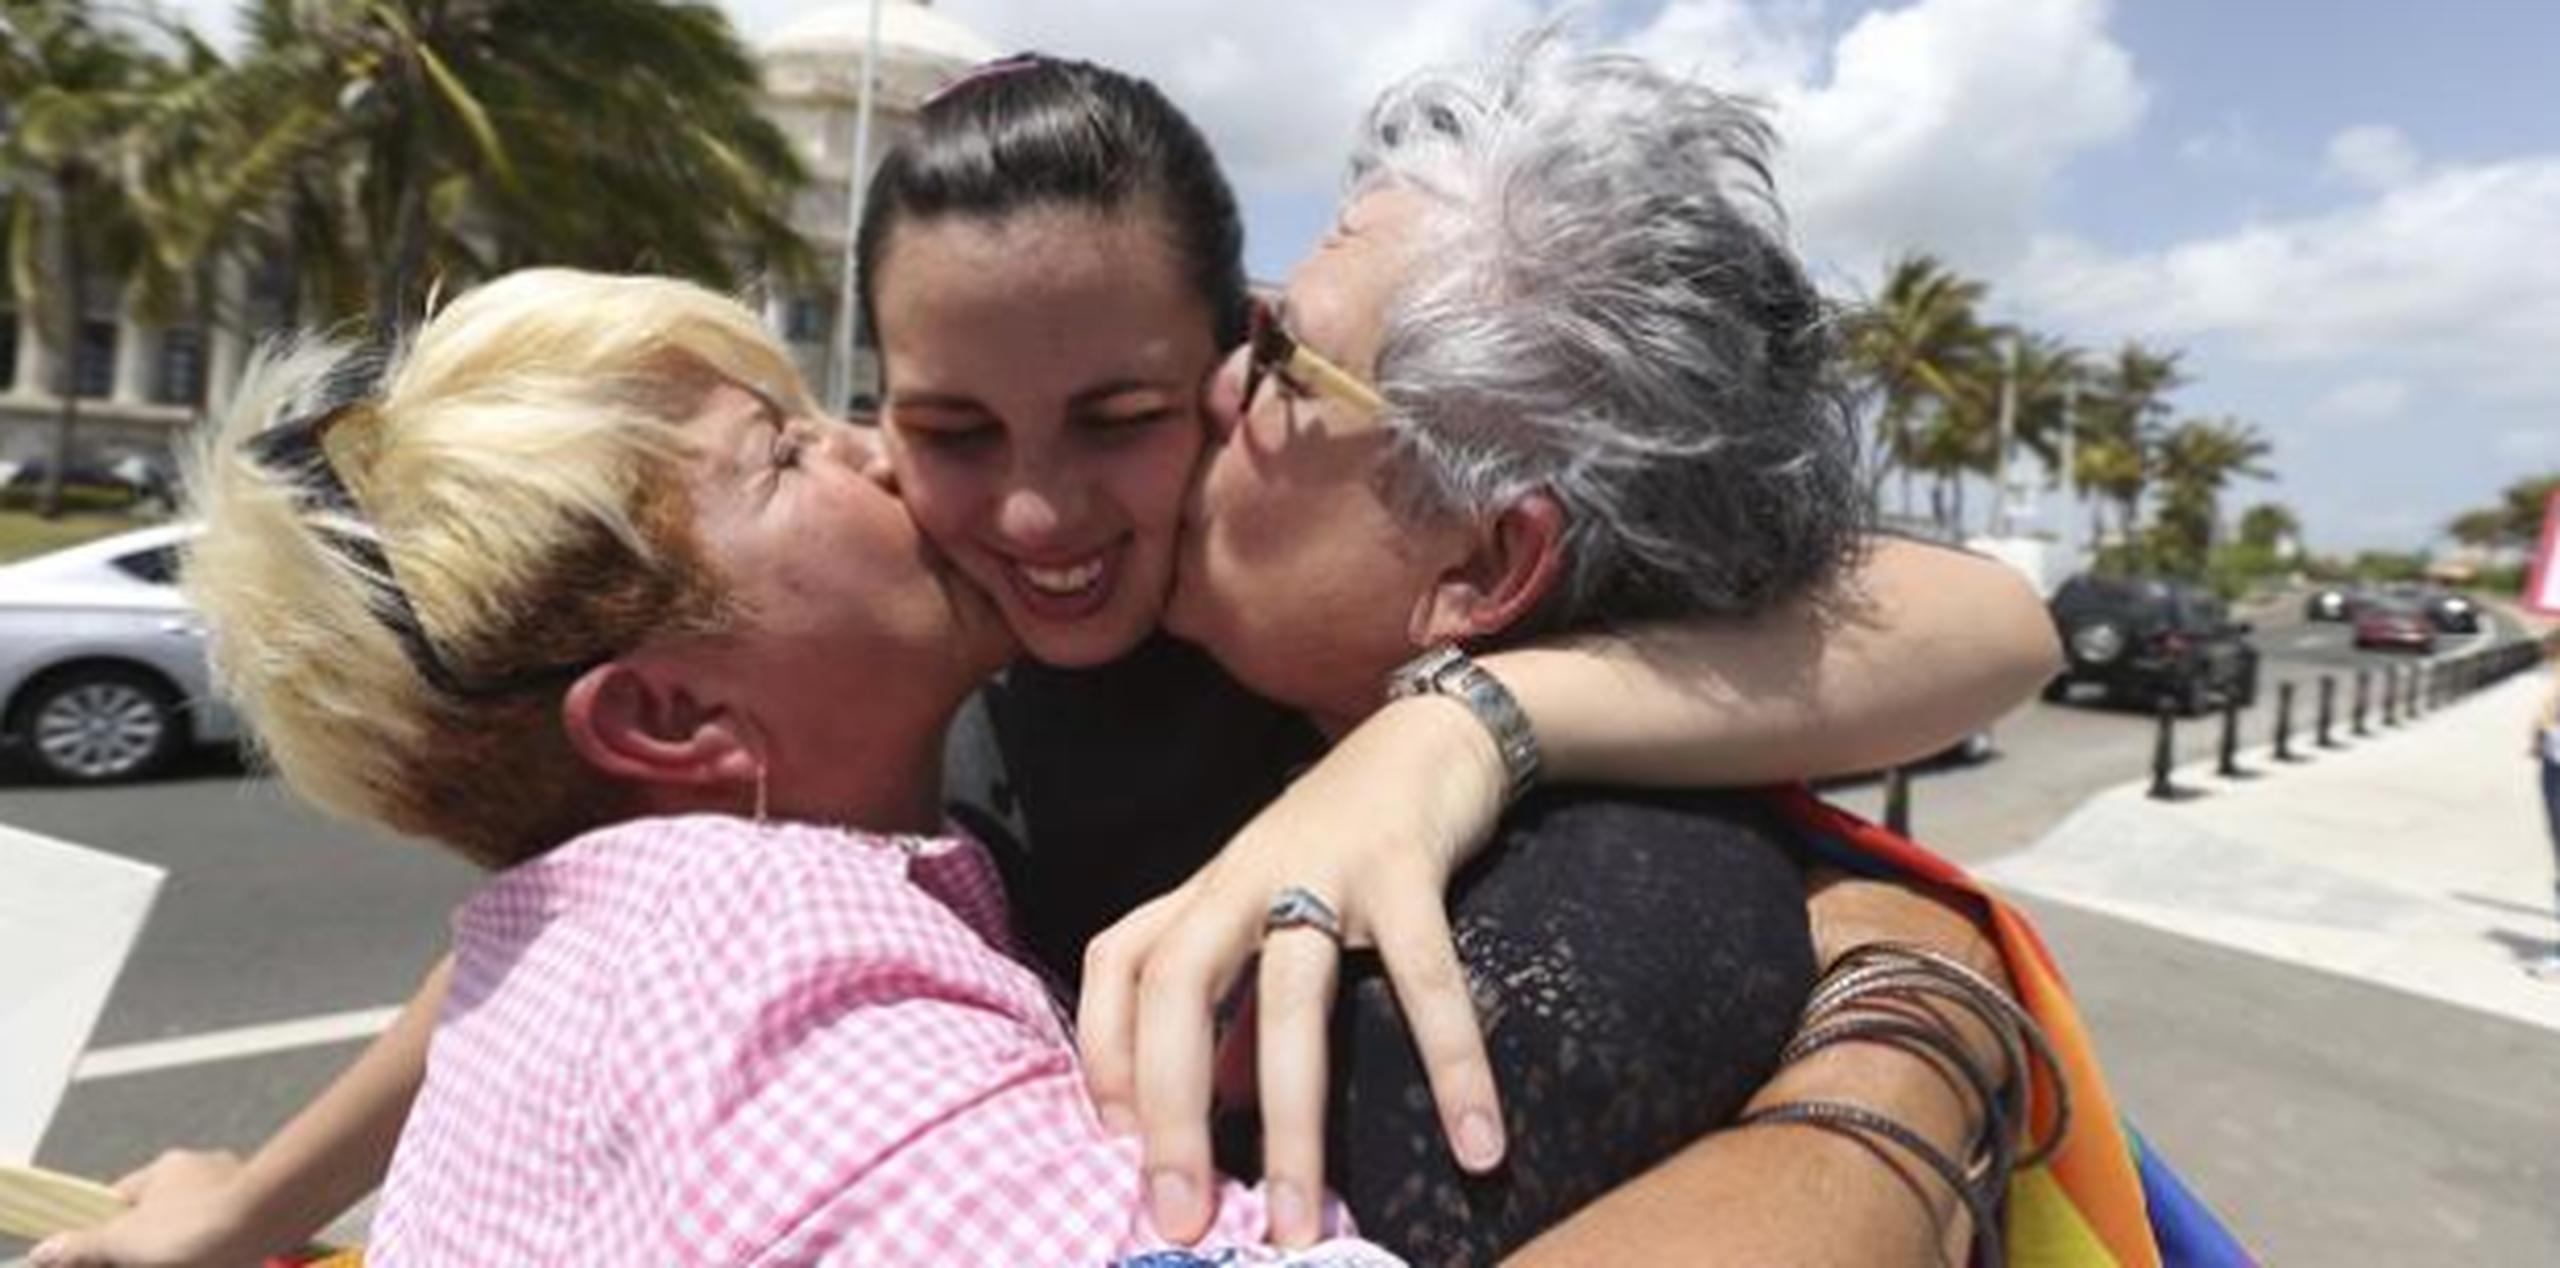 Ada Álvarez, activista contra el maltrato en el noviazgo, recibe besos de su madre Ada Conde y la esposa de su madre, Ivonne. (Archivo)